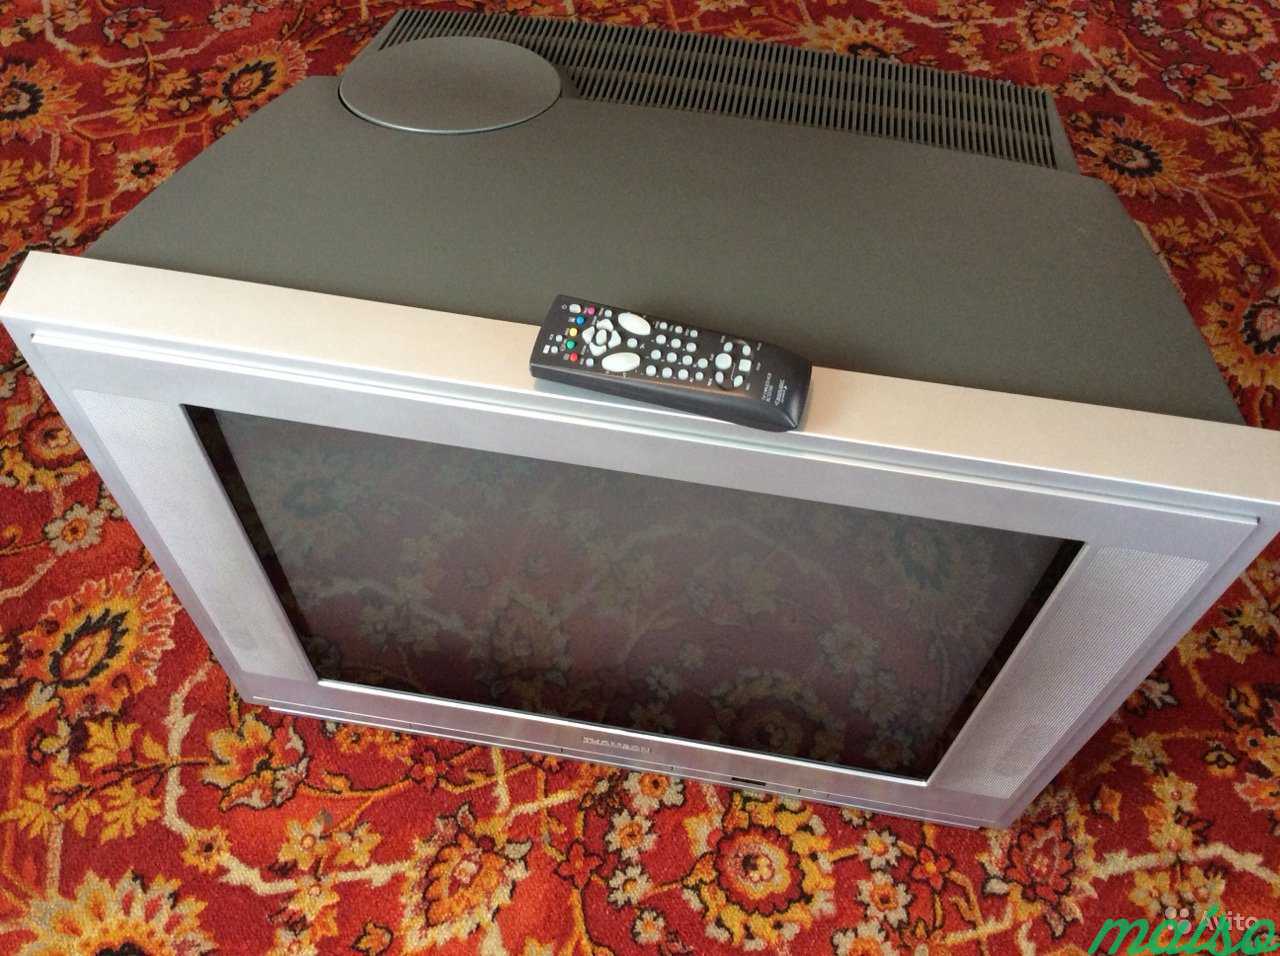 Телевизор б у спб. Thomson 29df17kg. Телевизор кинескопный Thomson 29 72 см. Телевизор Томсон ЭЛТ 72 см. Телевизор с кинескопом 72 см Томсон.